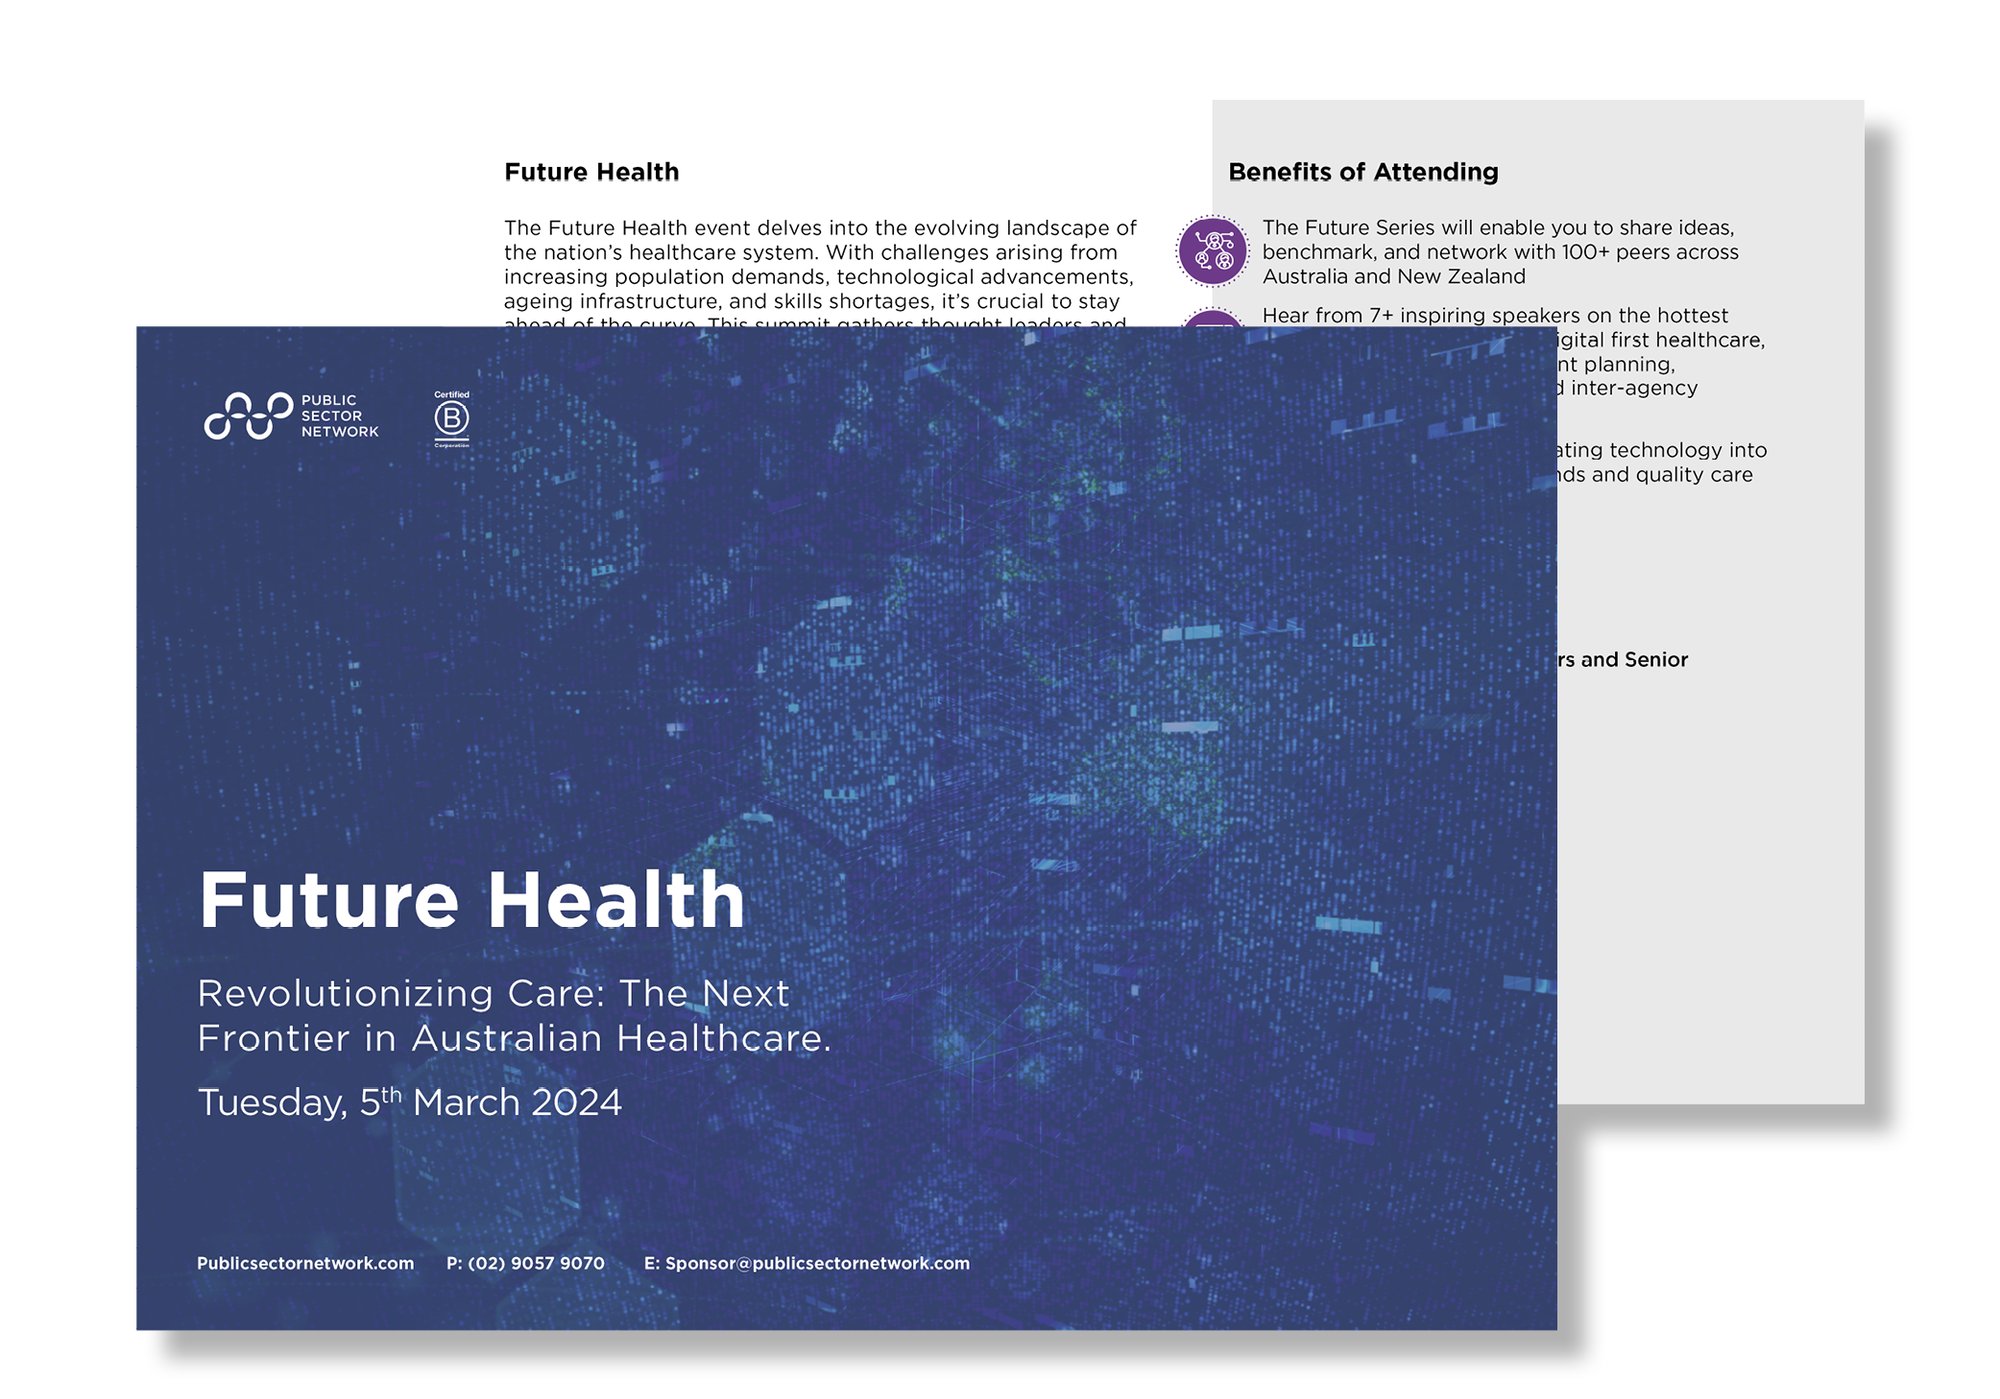 Future Health, 5th March